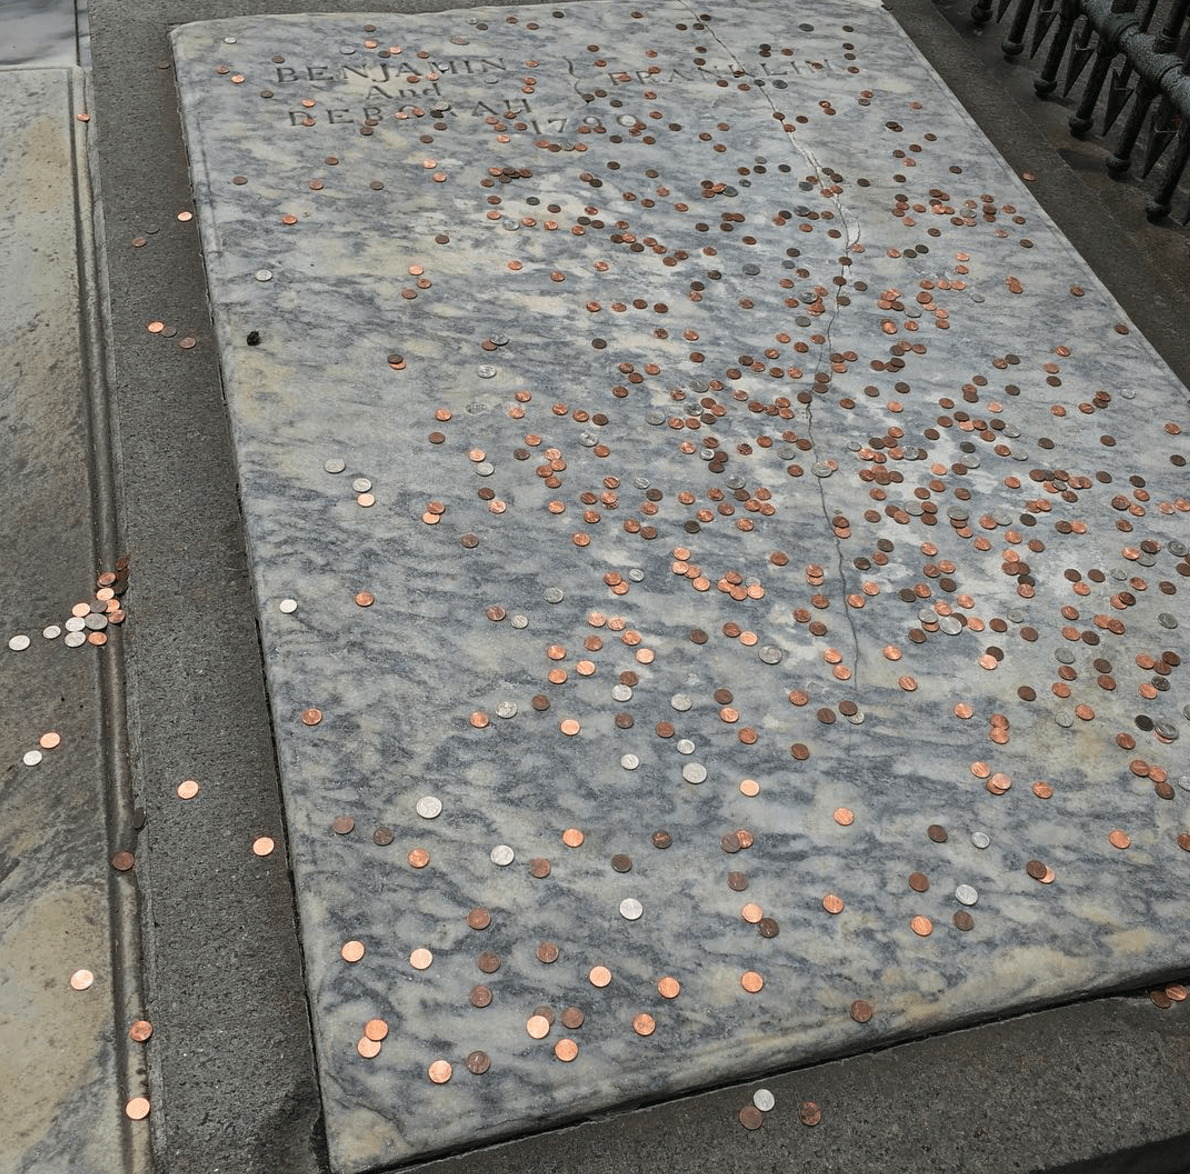 Ben Franklin’s gravestone needs your help